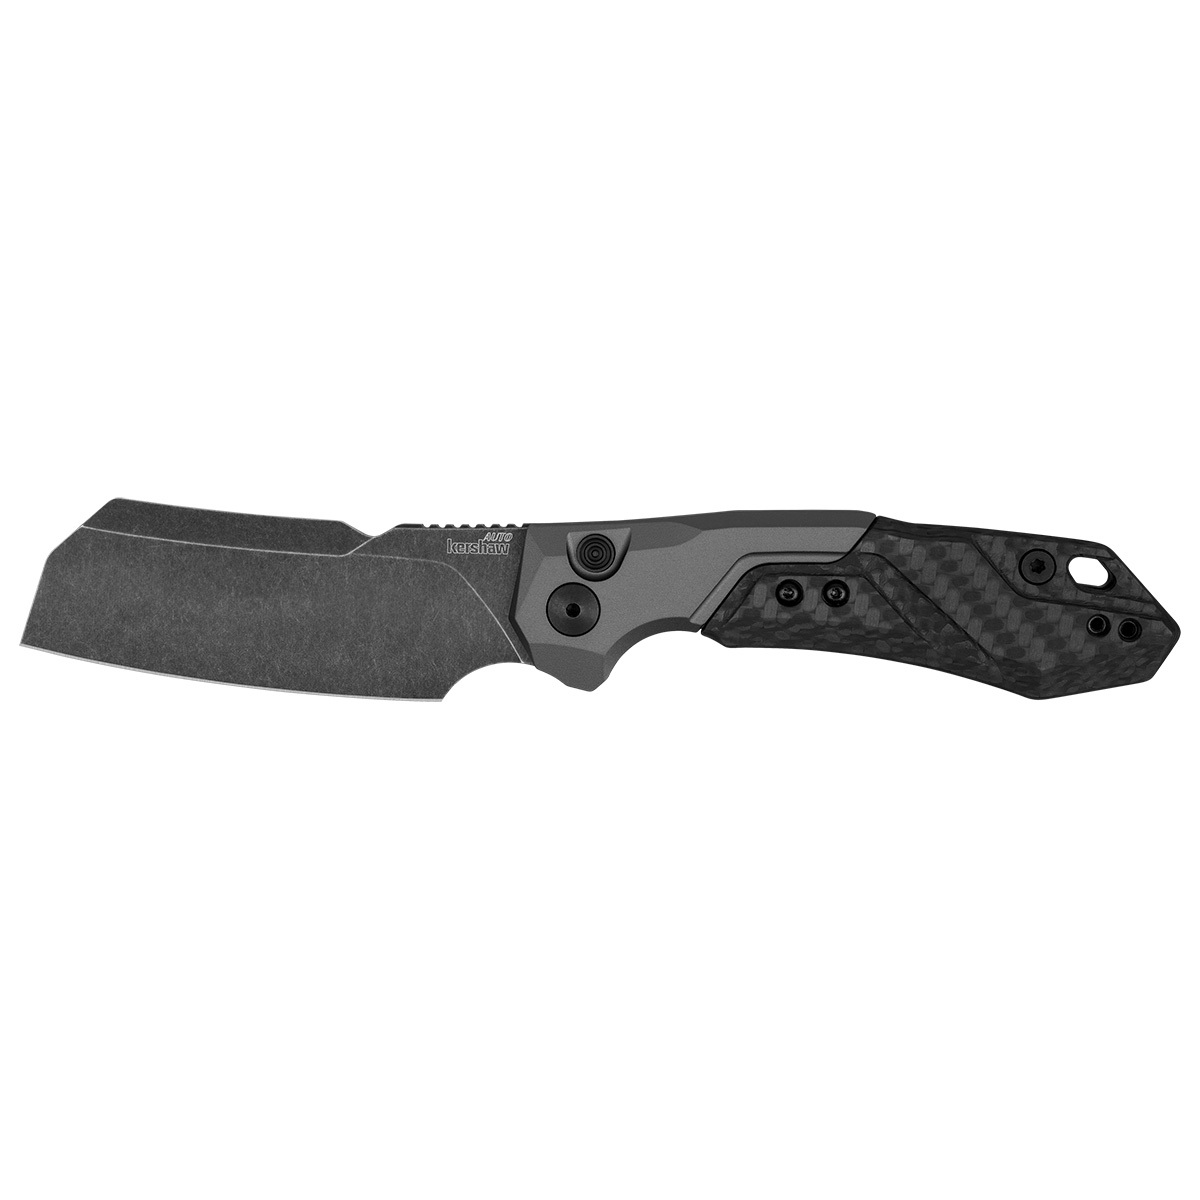 Складной нож Kershaw Launch 14, сталь CPM154, рукоять алюминий/Carbon fiber нож складной benchmade mini adamas 273gy 1 сталь cru wear черная рукоять g10